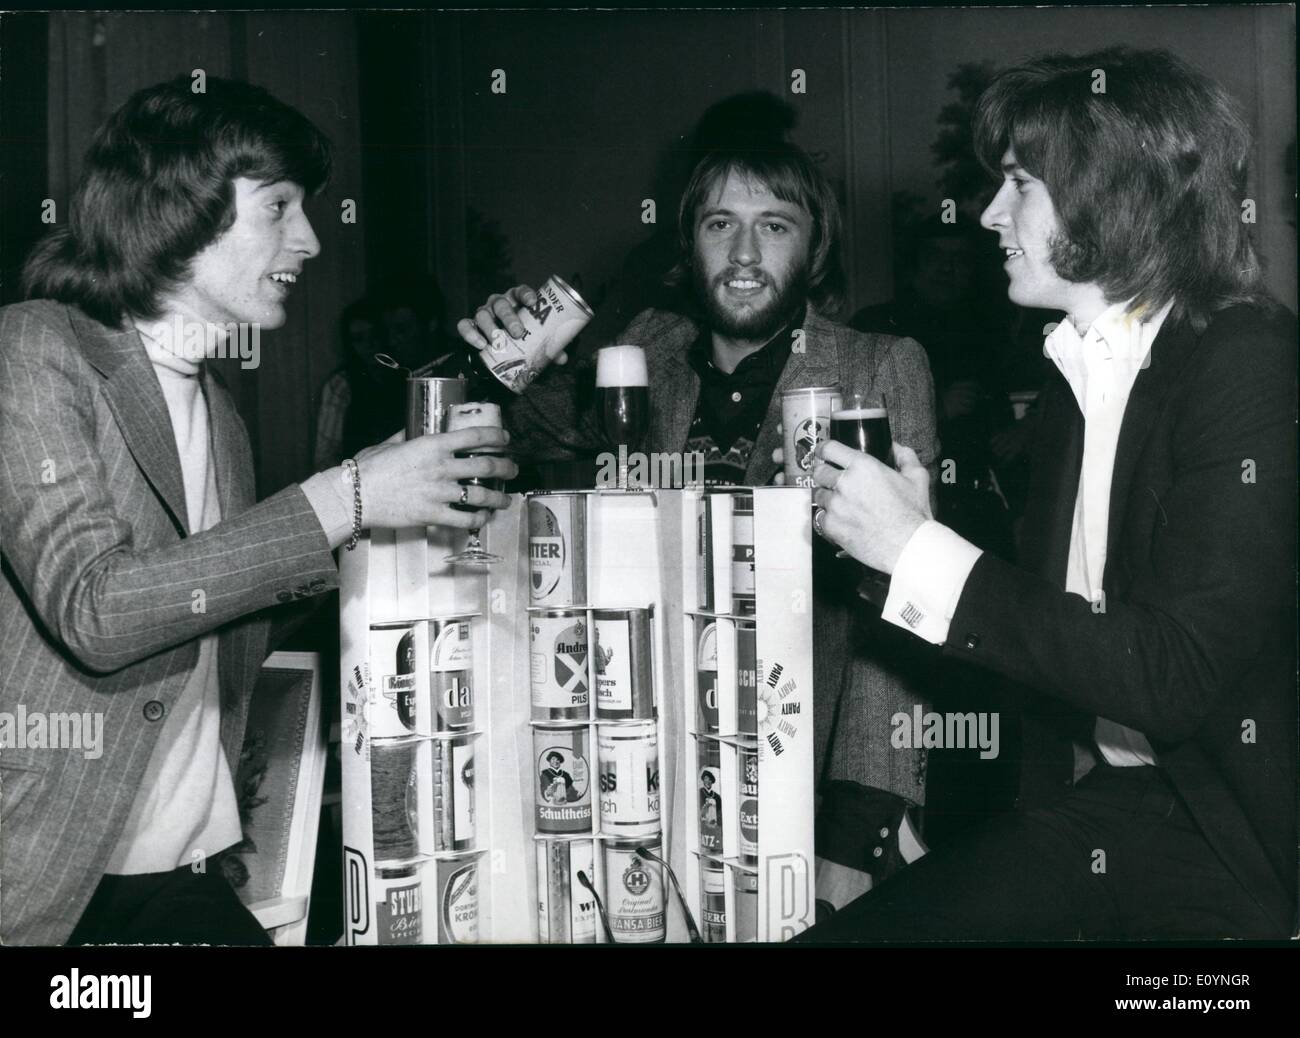 Le 12 décembre 1970 - les Bee Gees sont réunis : Pour la première fois après leur séparation les Bee Gees - les frères Barry, Maurice et Robin Gibb - se sont réunis à l'Allemagne pour une émission diffusée. Les stars populaires, ils sont certains des meilleurs, avait essayé tio réussir séparément. Maintenant ils sont de nouveau ensemble pour le plus grand plaisir de leurs fans. Dans un hôtel en étendue qu'ils avaient une partie de la bière avec de l'étain de goûter plusieurs sortes de bière allemande (photo). La dernière ''Ip sur deux ans'' et un seul ''Lonely days'' des Bee Gees vient tout juste de sortir. Banque D'Images